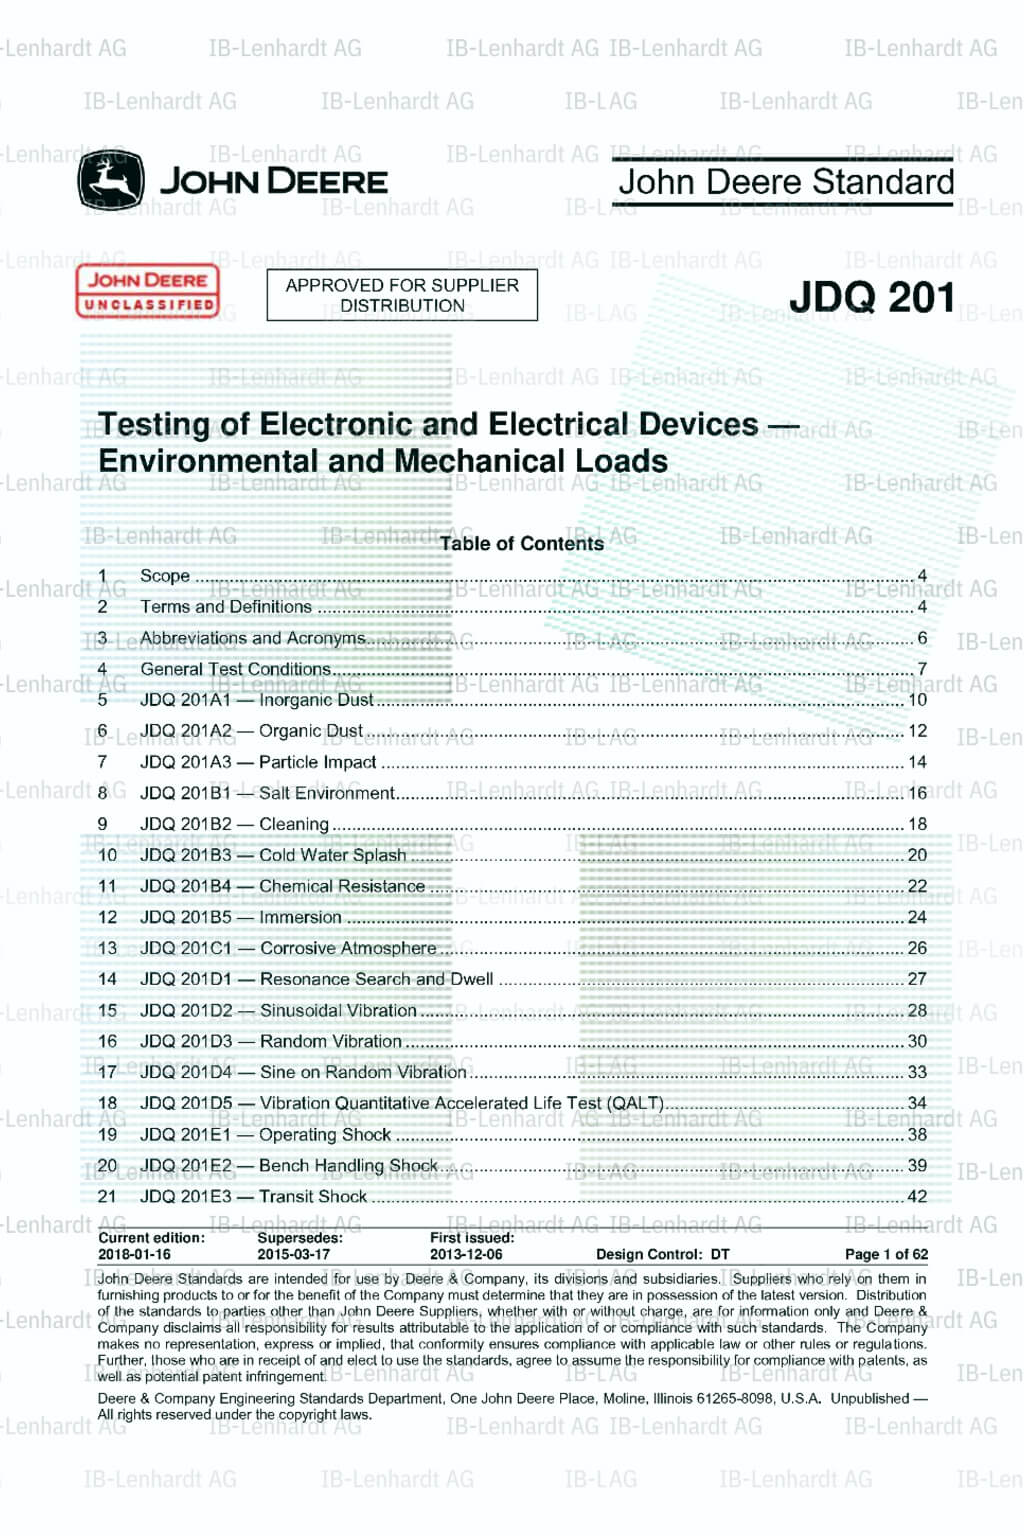 John Deere Standard JDQ 201